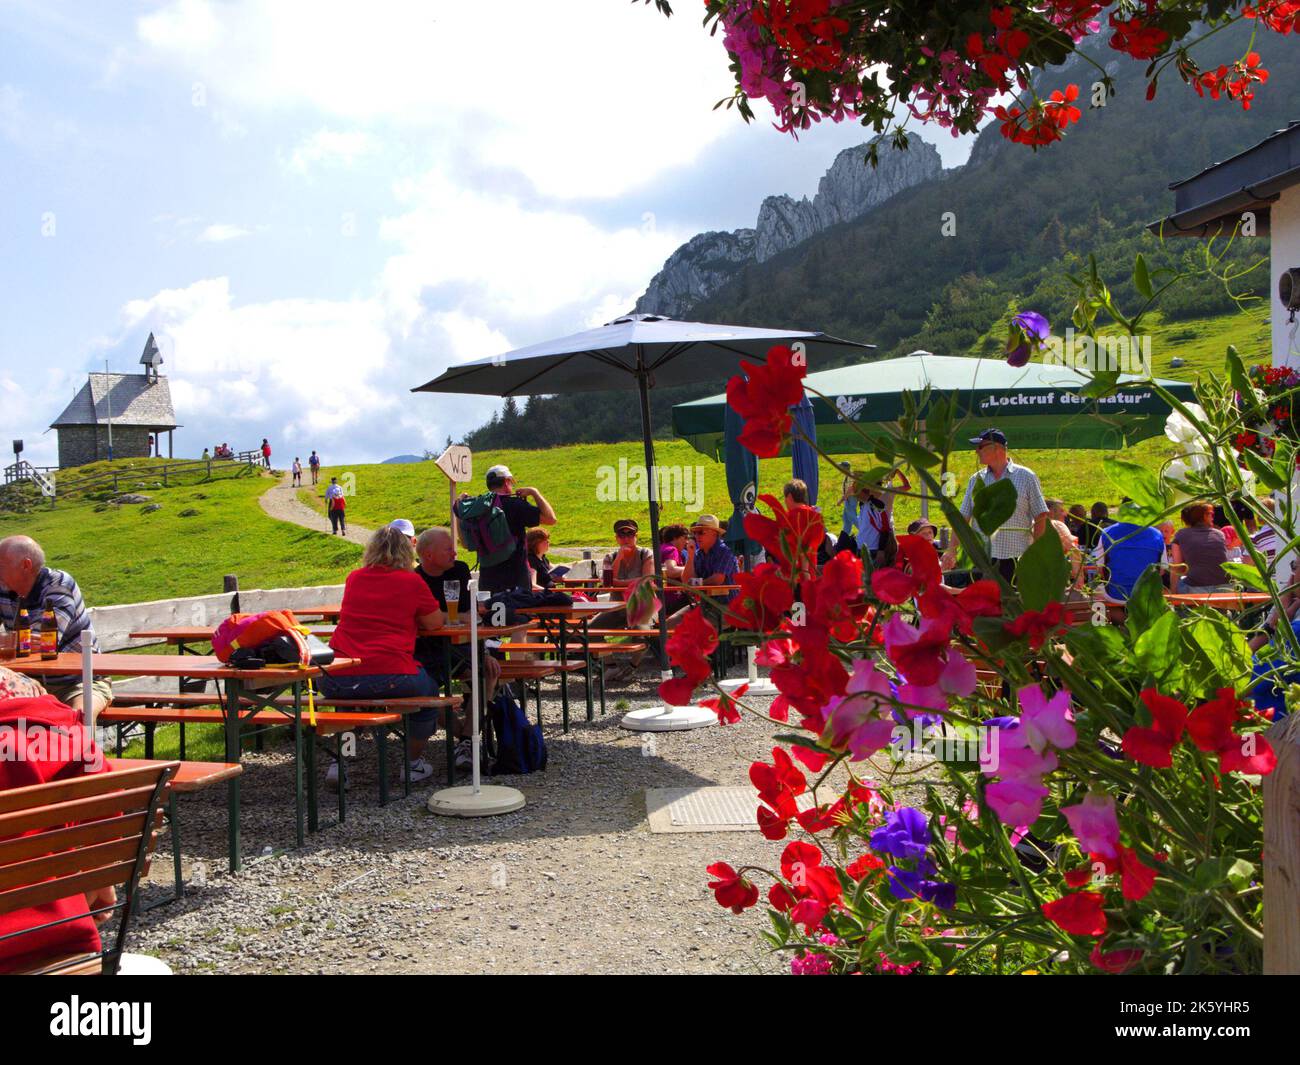 Terrasse d'un restaurant alpin allemand 'Steinling Alm' sur la montagne de Kampenwand, invités, fleurs et chapelle, Chiemgau, Bavière, Allemagne. Terrasse des Alp Banque D'Images